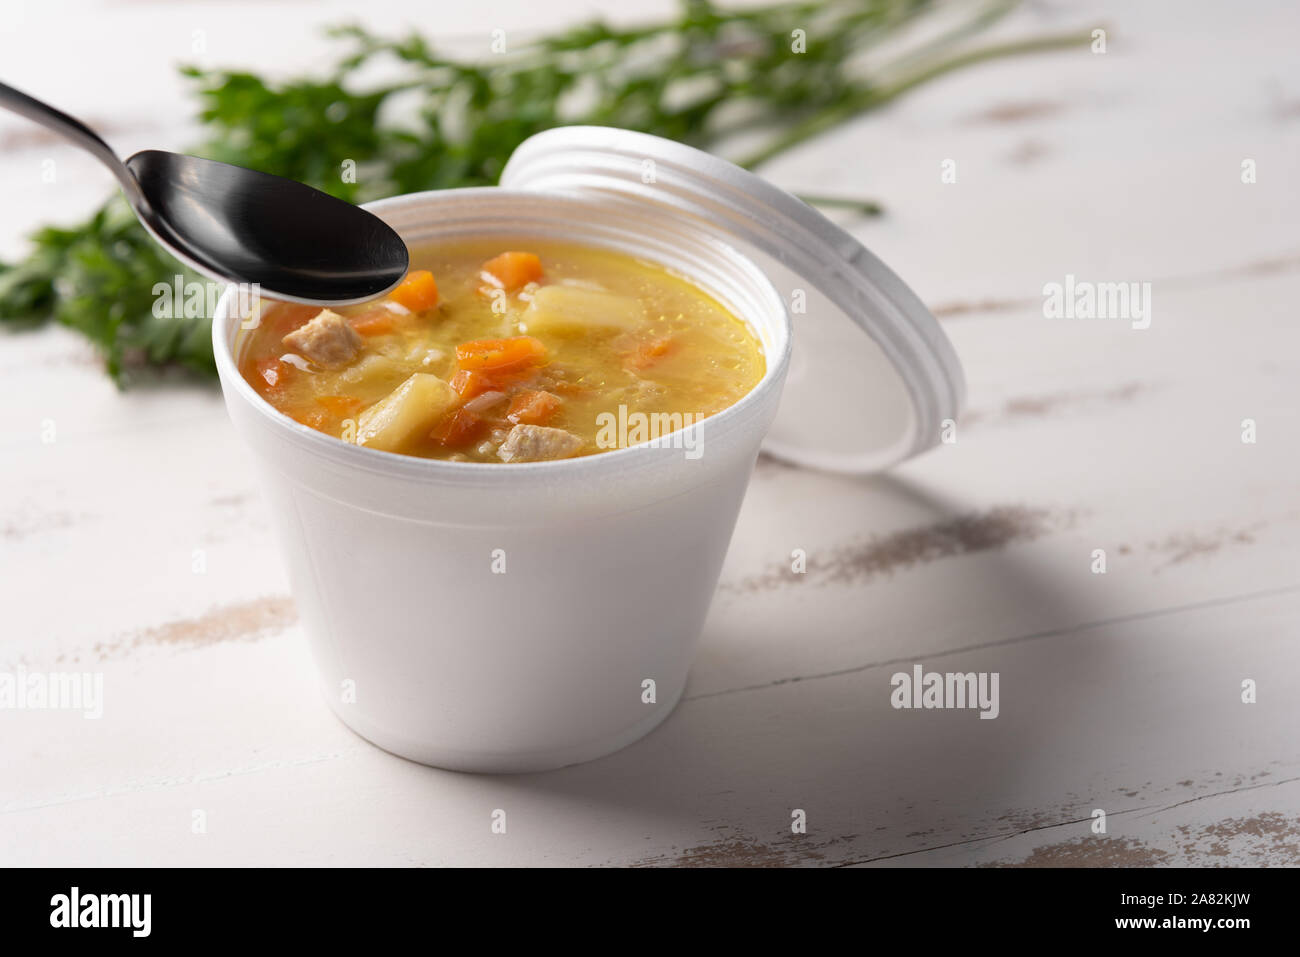 Soupe de légumes dans un bol en plastique jetables avec un couvercle, sur fond blanc. Concept de l'alimentation rapide et facile. Le comportement alimentaire, de la distribution. Banque D'Images